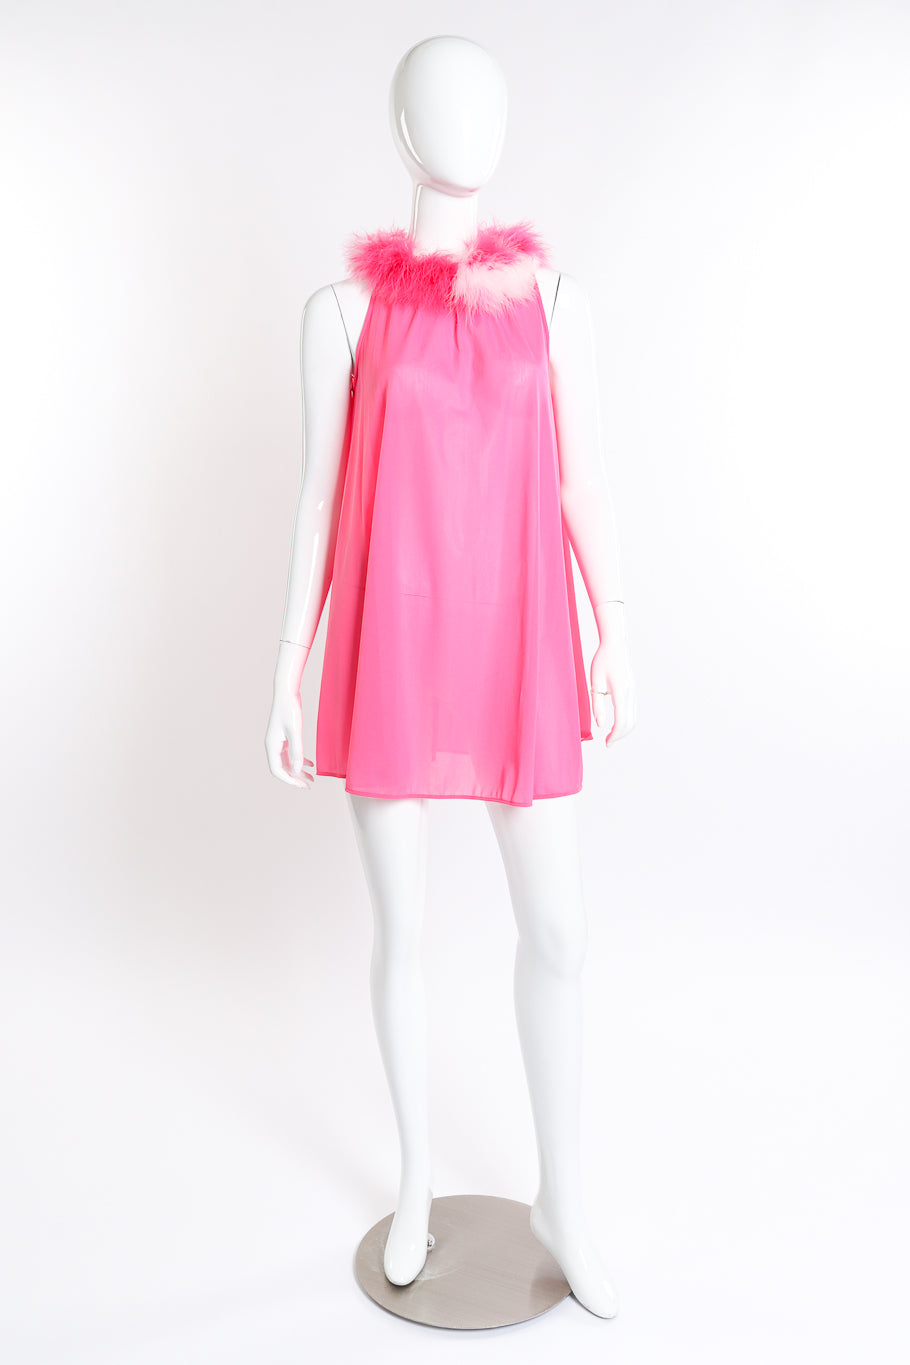 Vintage Flair Marabou Trim Top & Dress Set dress front on mannequin @recess la